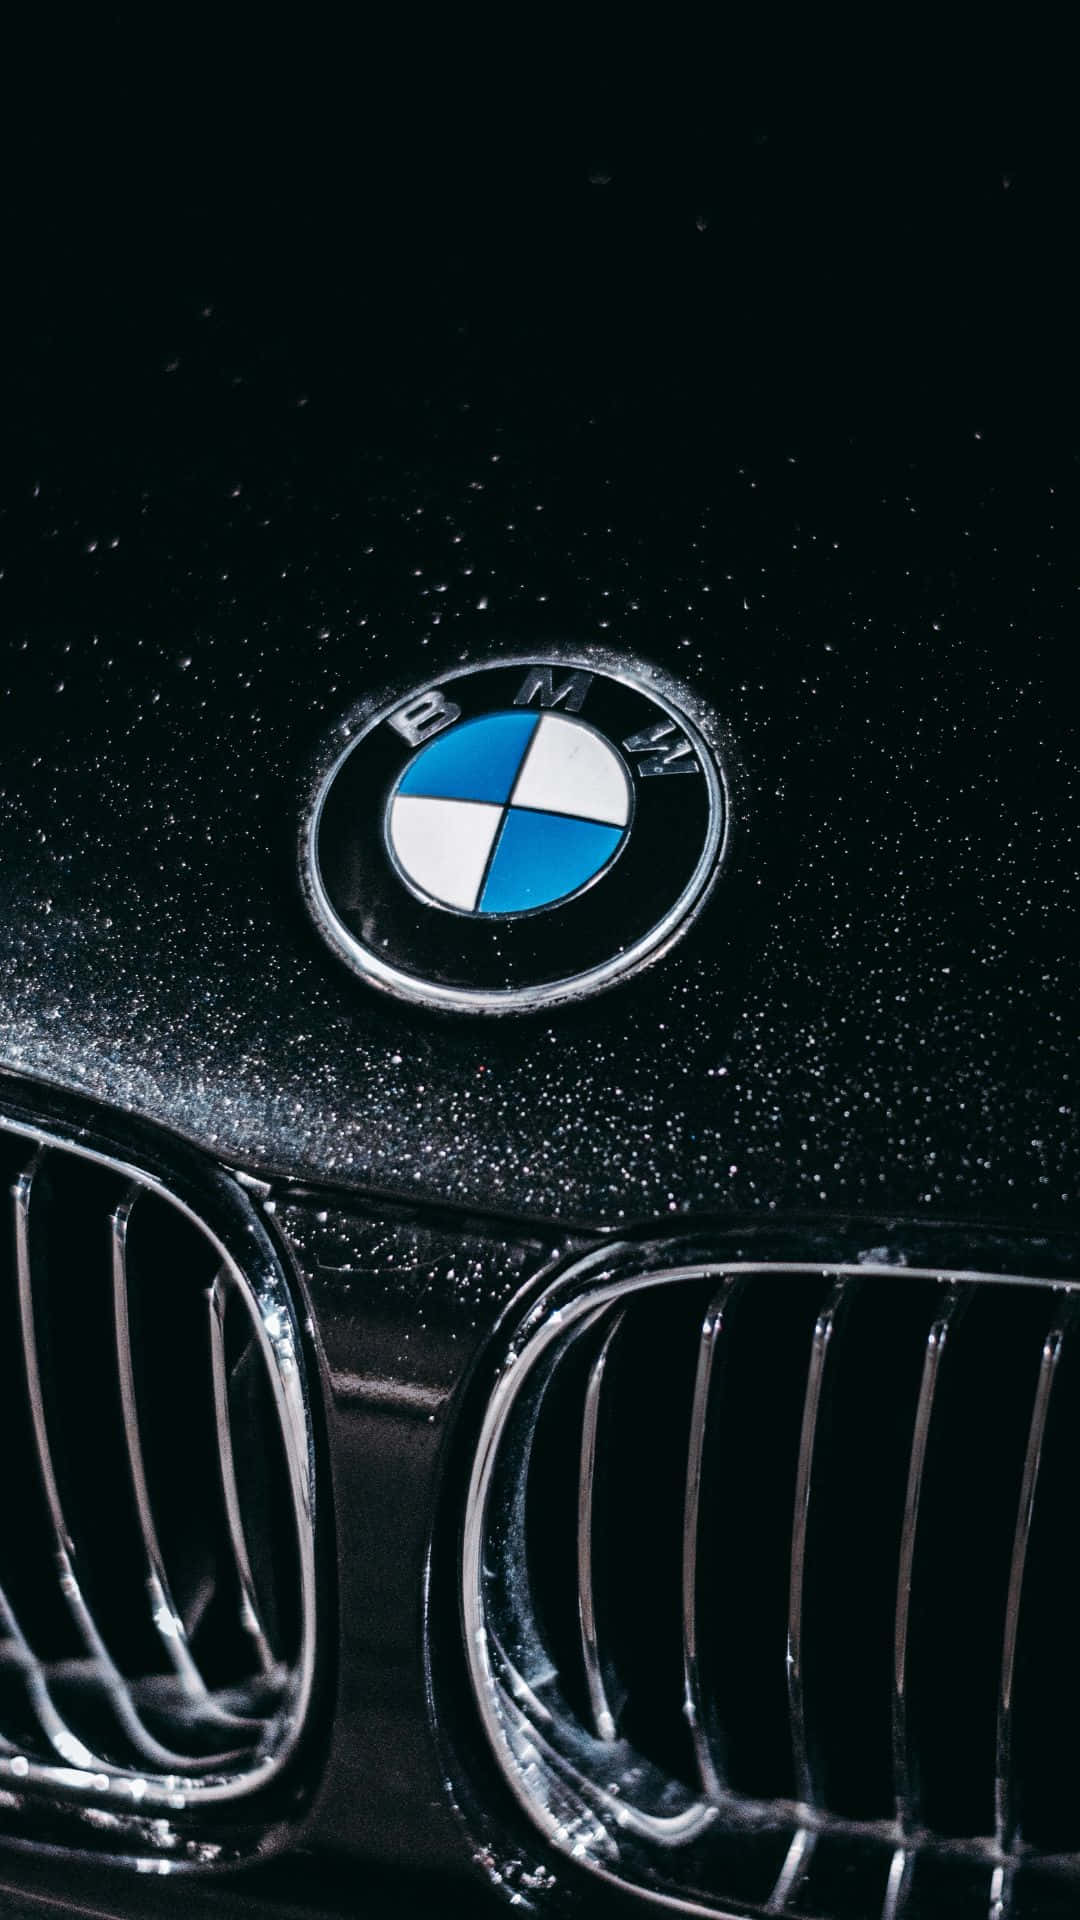 Android-drevne BMW i al sin herlighed